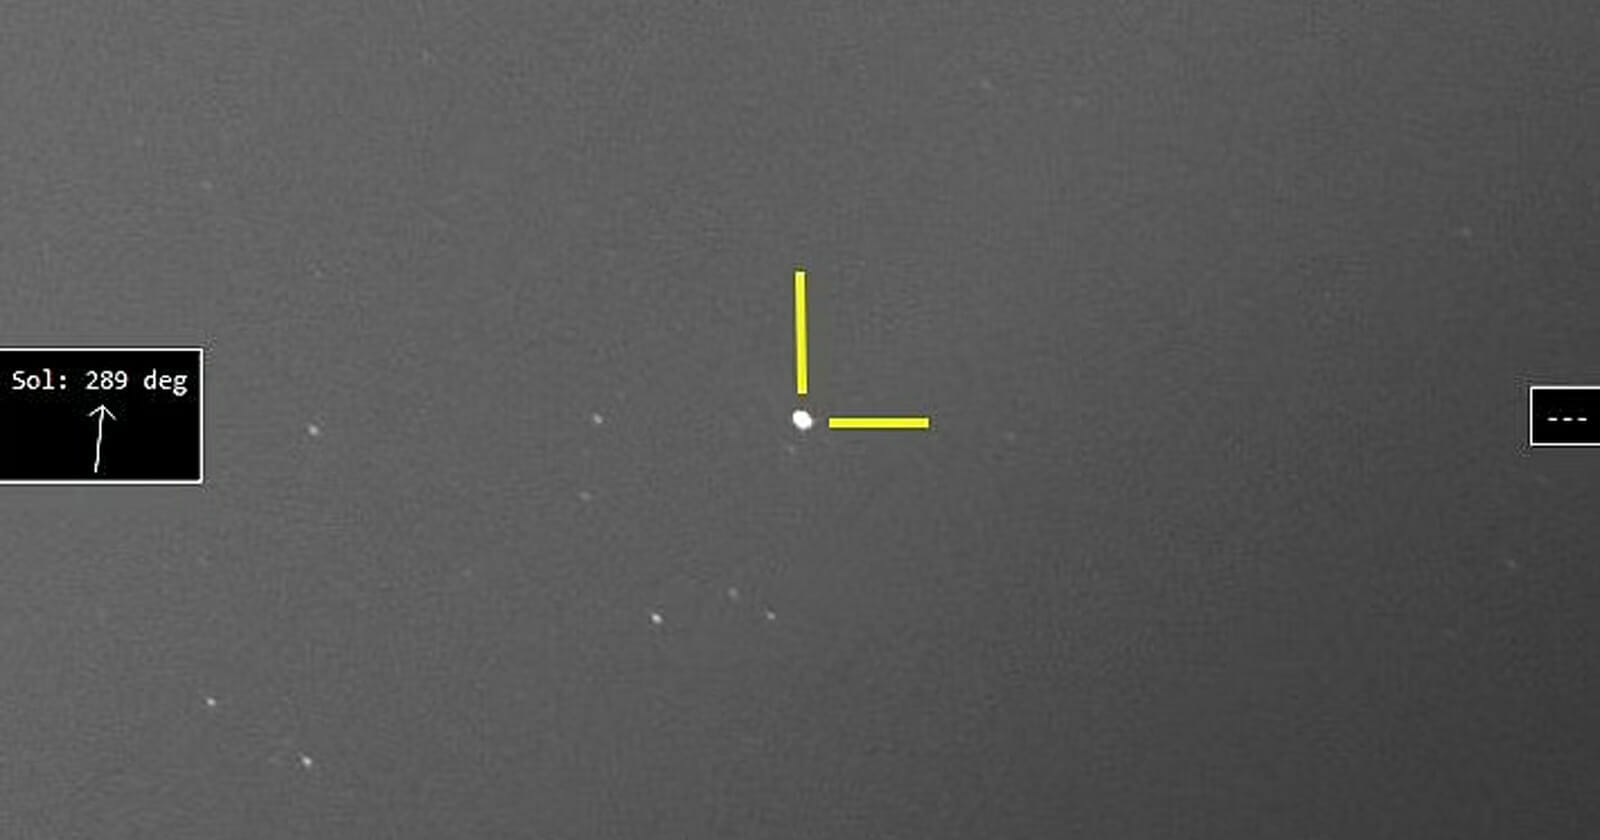 مركز الفلك الدولي يلتقط صورة لنجم منفجر watanserb.com